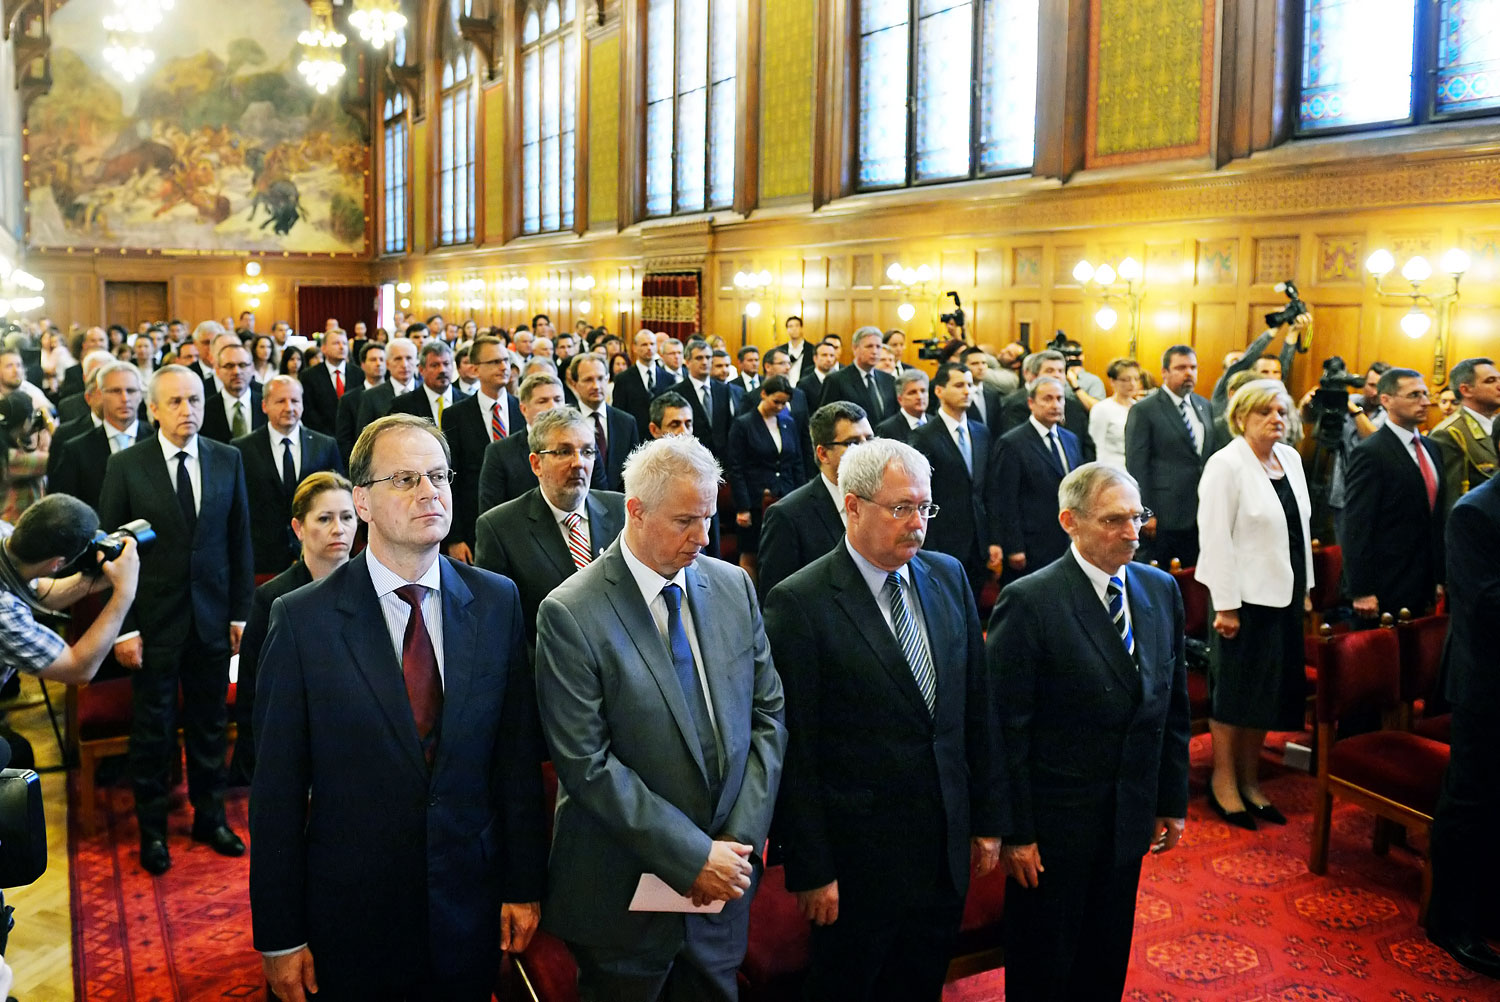 Merre a szem ellát: miniszterek és államtitkárok az Országház Vadásztermében 2014-ben